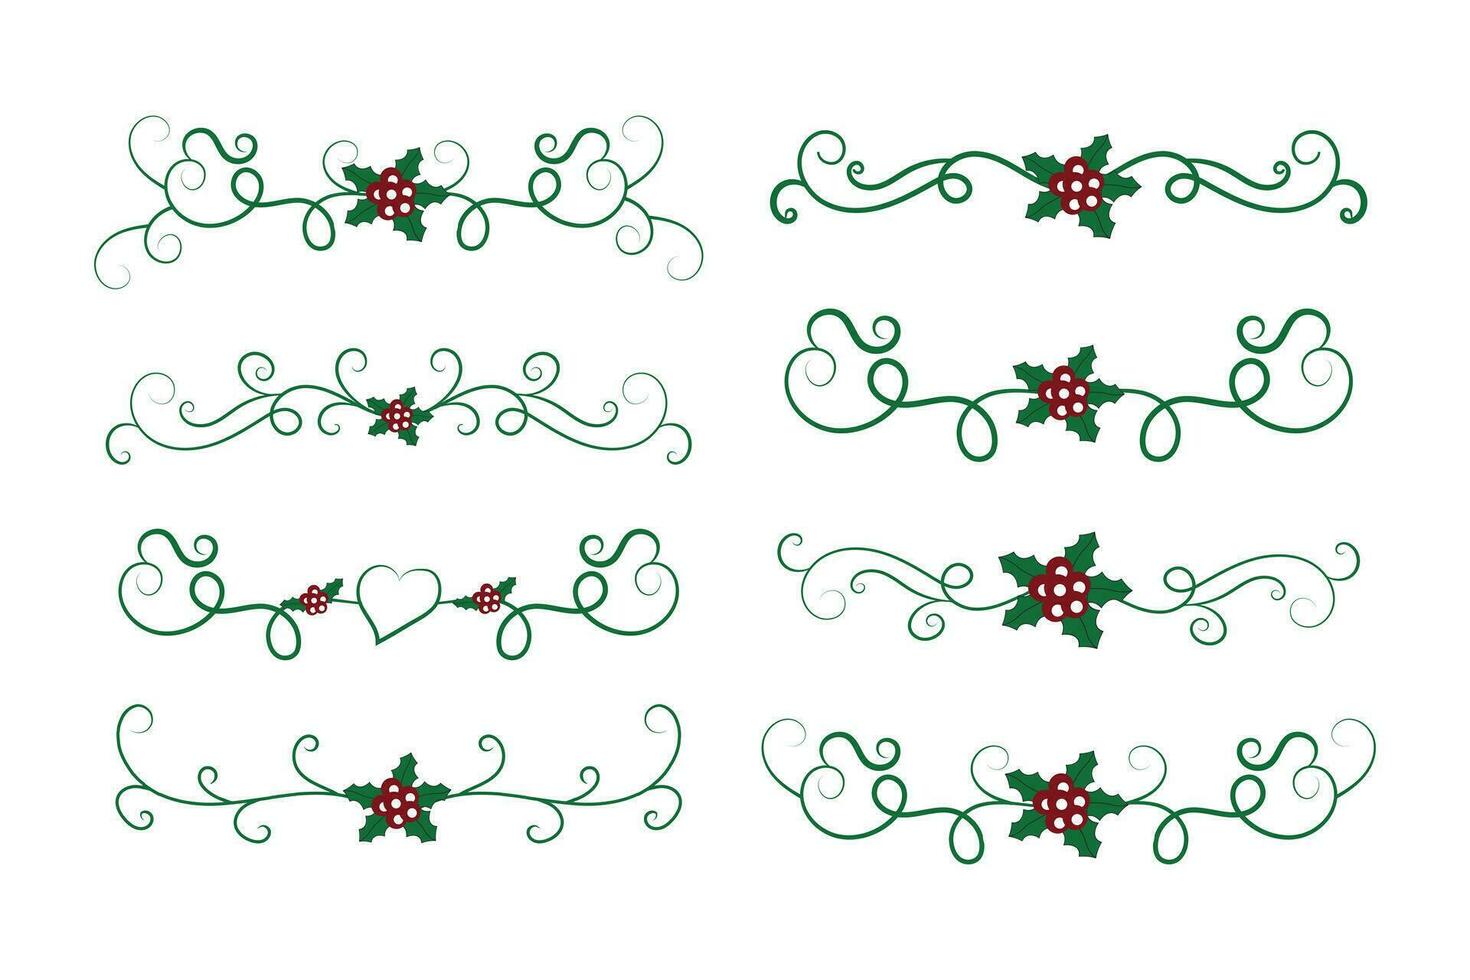 jul krusidullar virvlar avdelare rader dekorativ element, årgång kalligrafi skrolla glad jul blå och röd järnek ornament, vinter- järnek headers text gräns sida dekor grön utsmyckad vektor